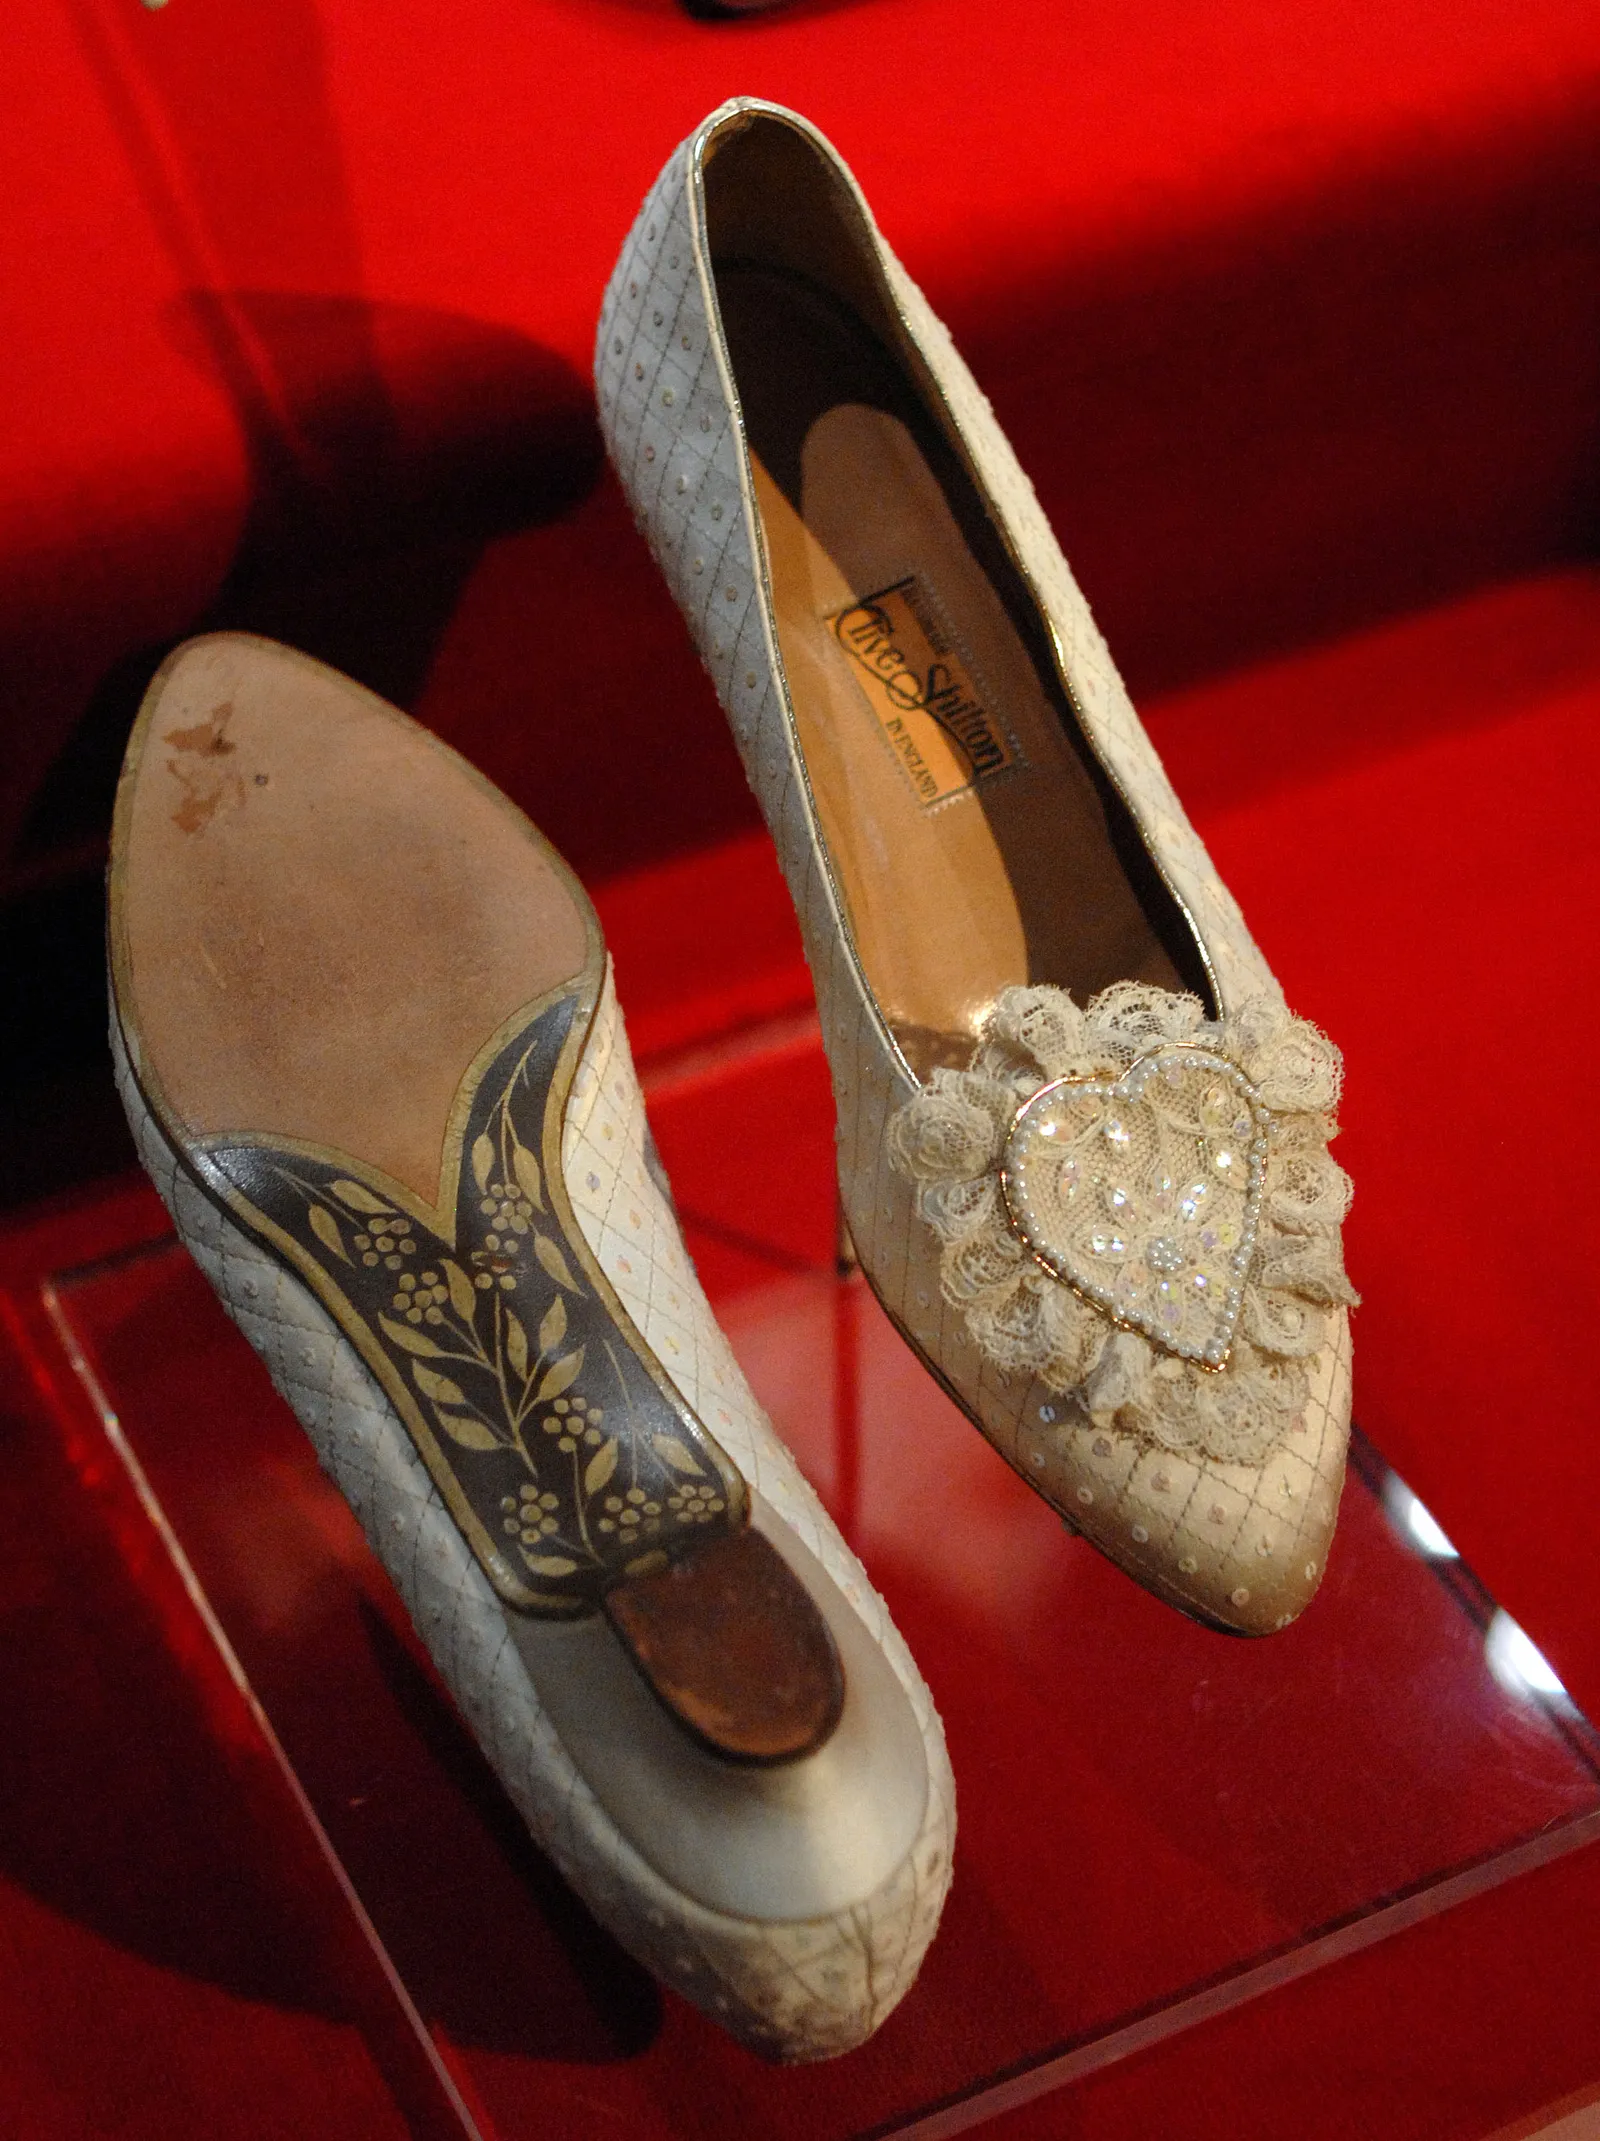 Diana miała namalowane serce pomiędzy literami C i D na podeszwach swoich ślubnych butów (Fot. Getty Images)